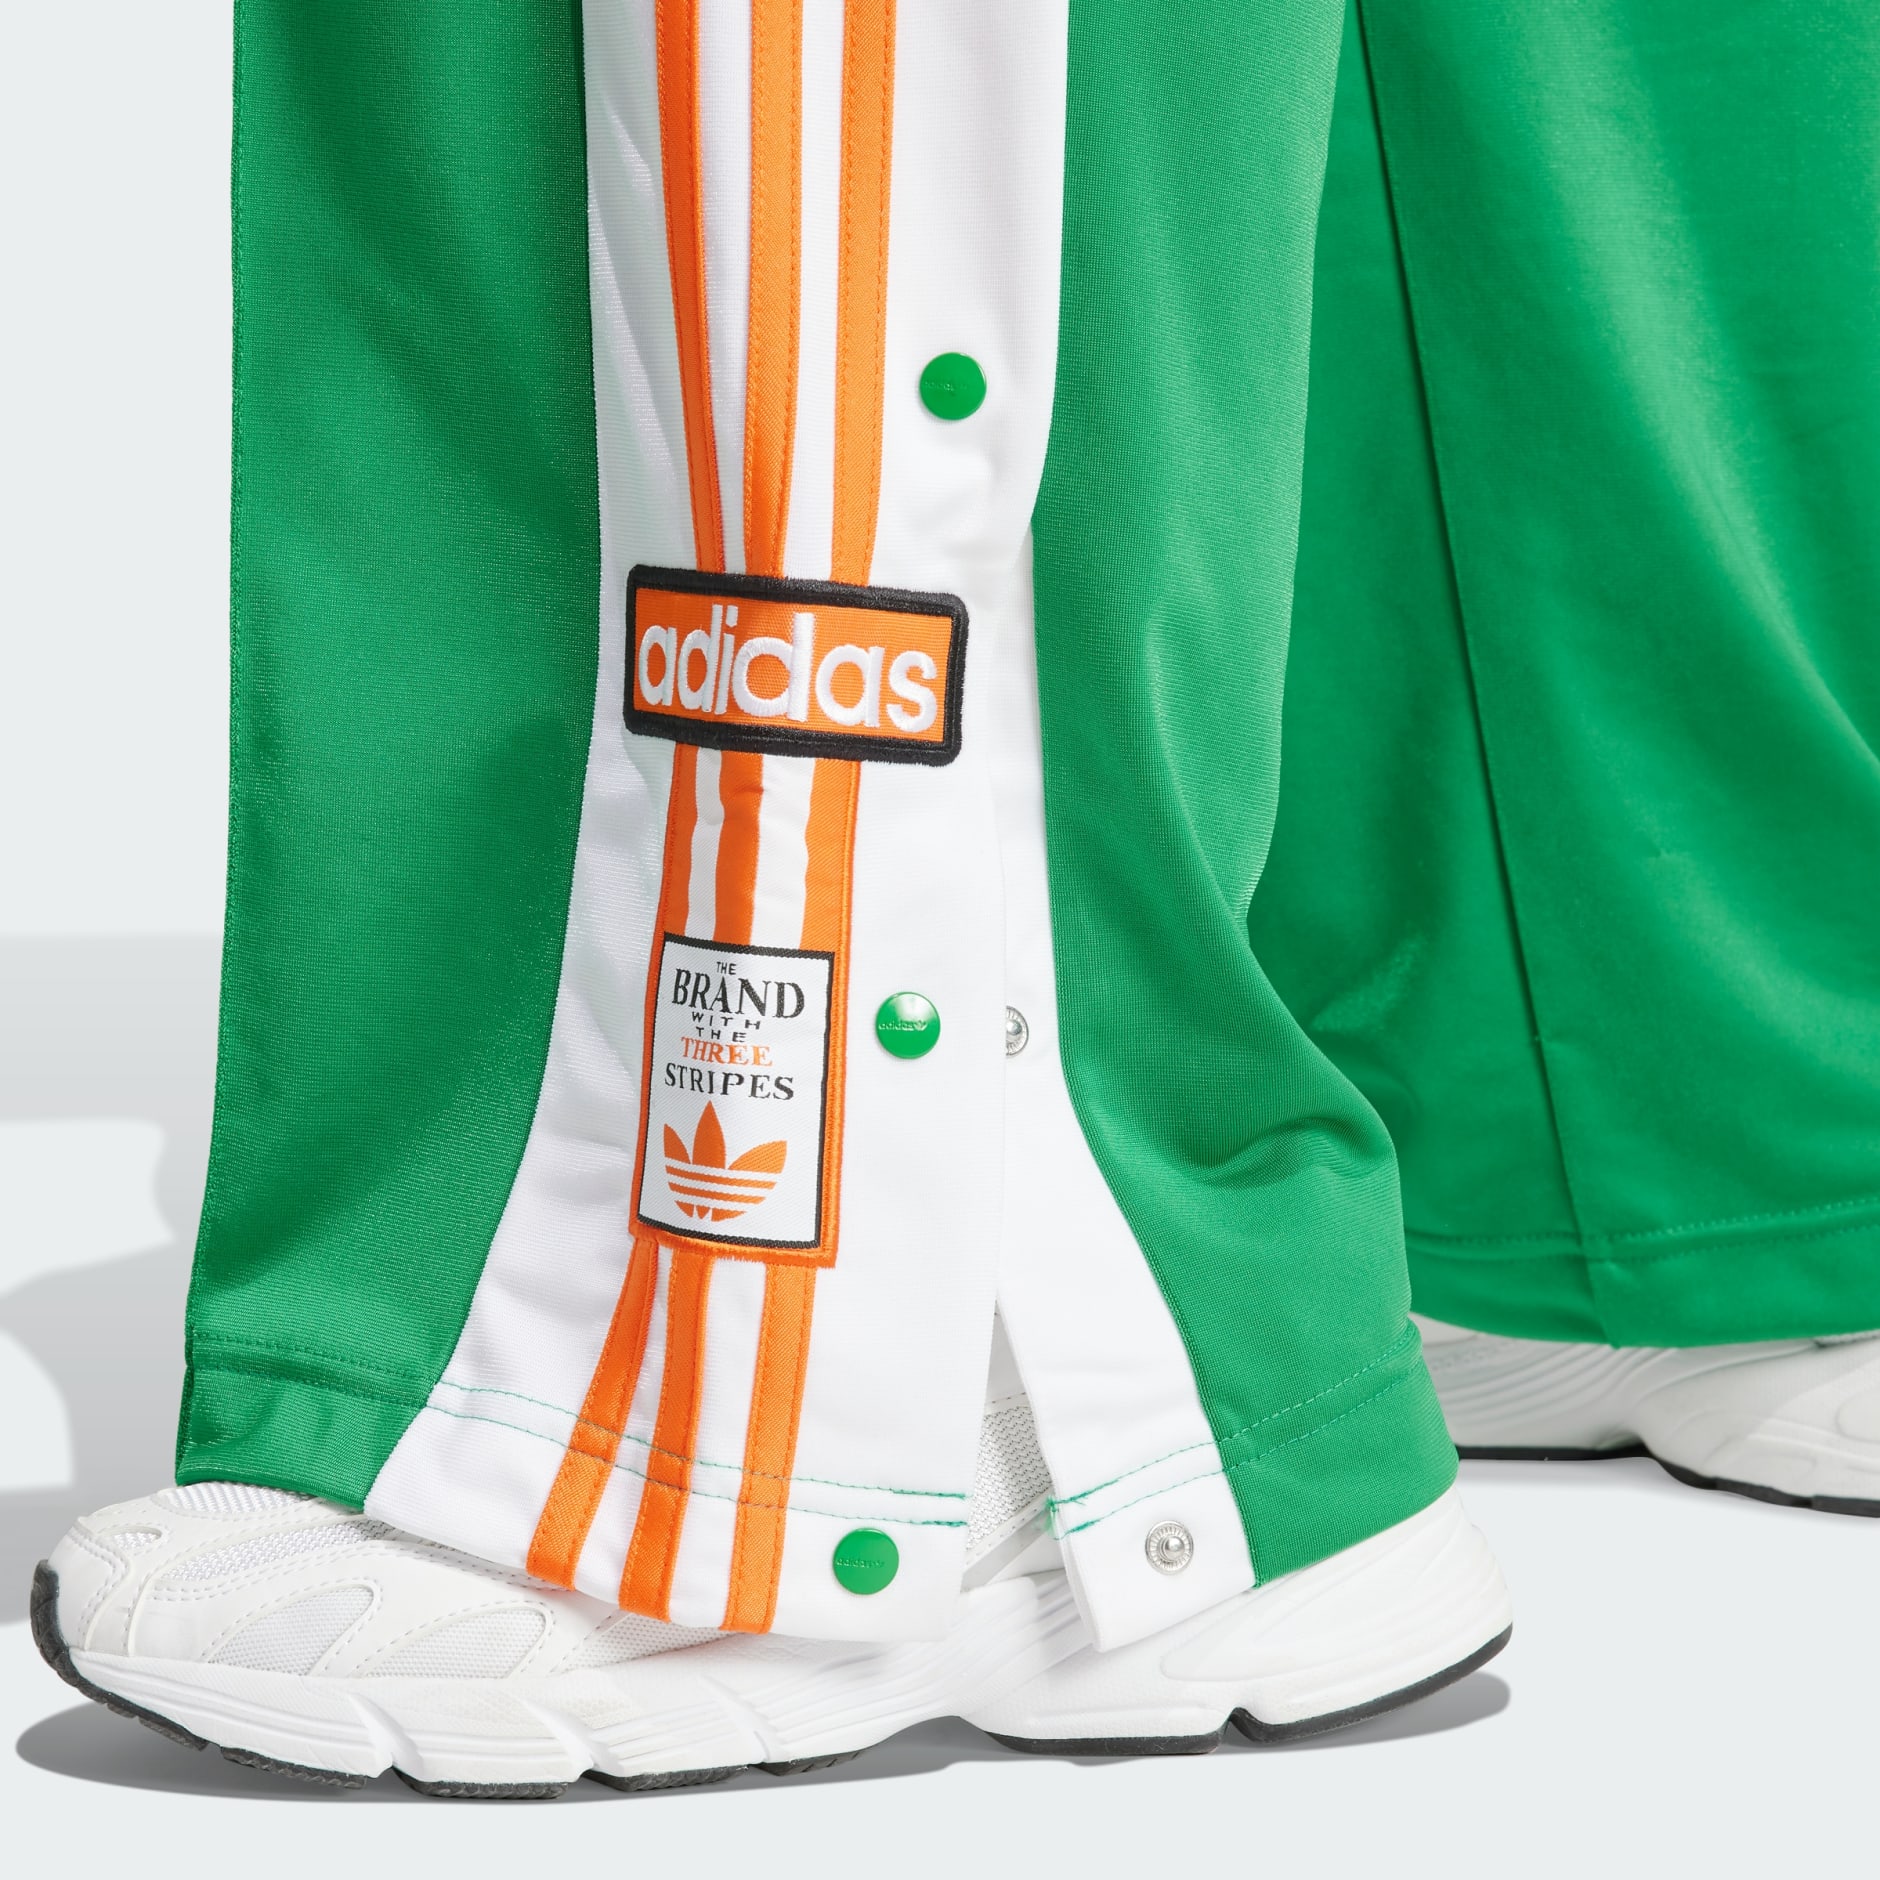 adidas Originals varsity adibreak pants in green